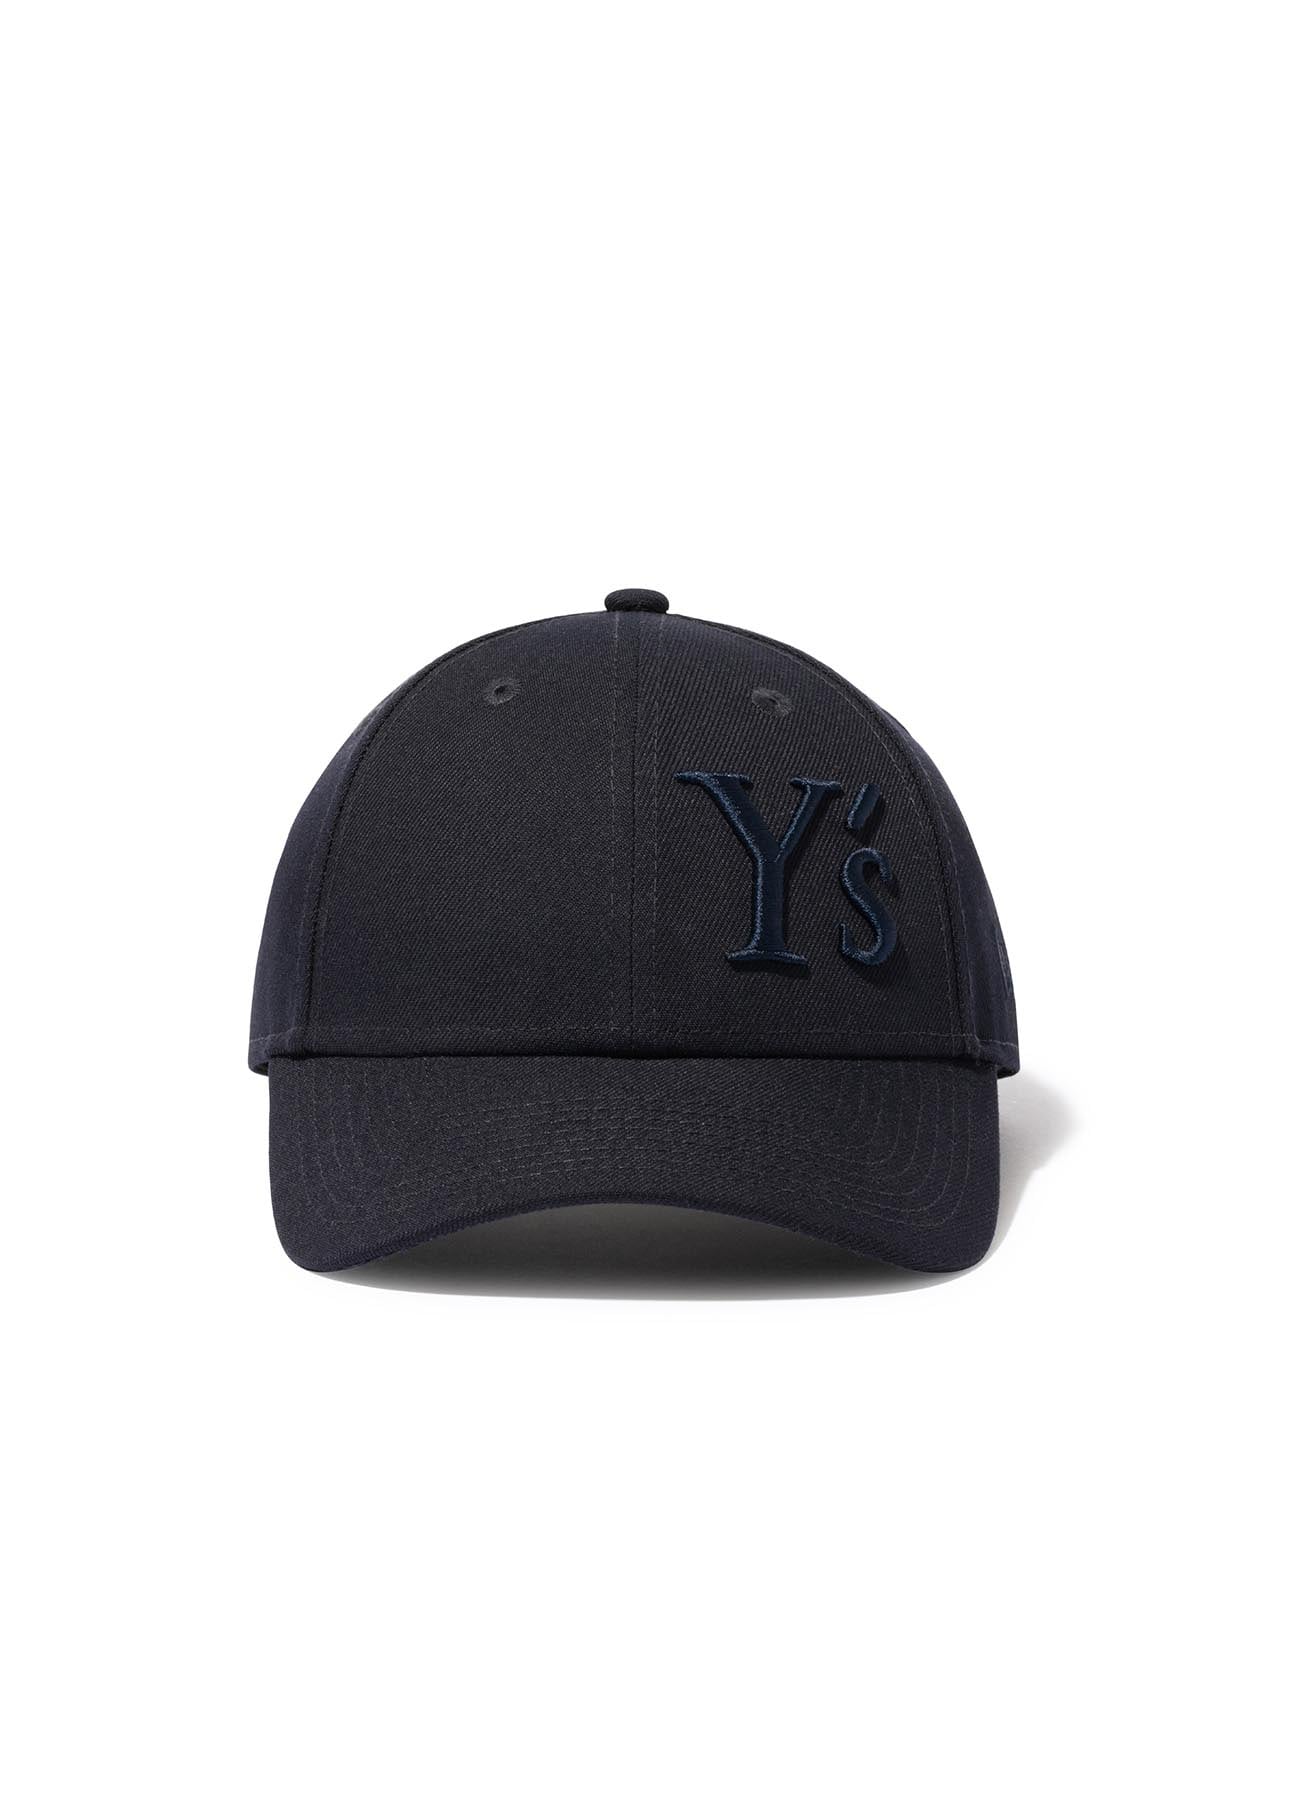 [Y's × New Era] 9FORTY Y's LOGO CAP